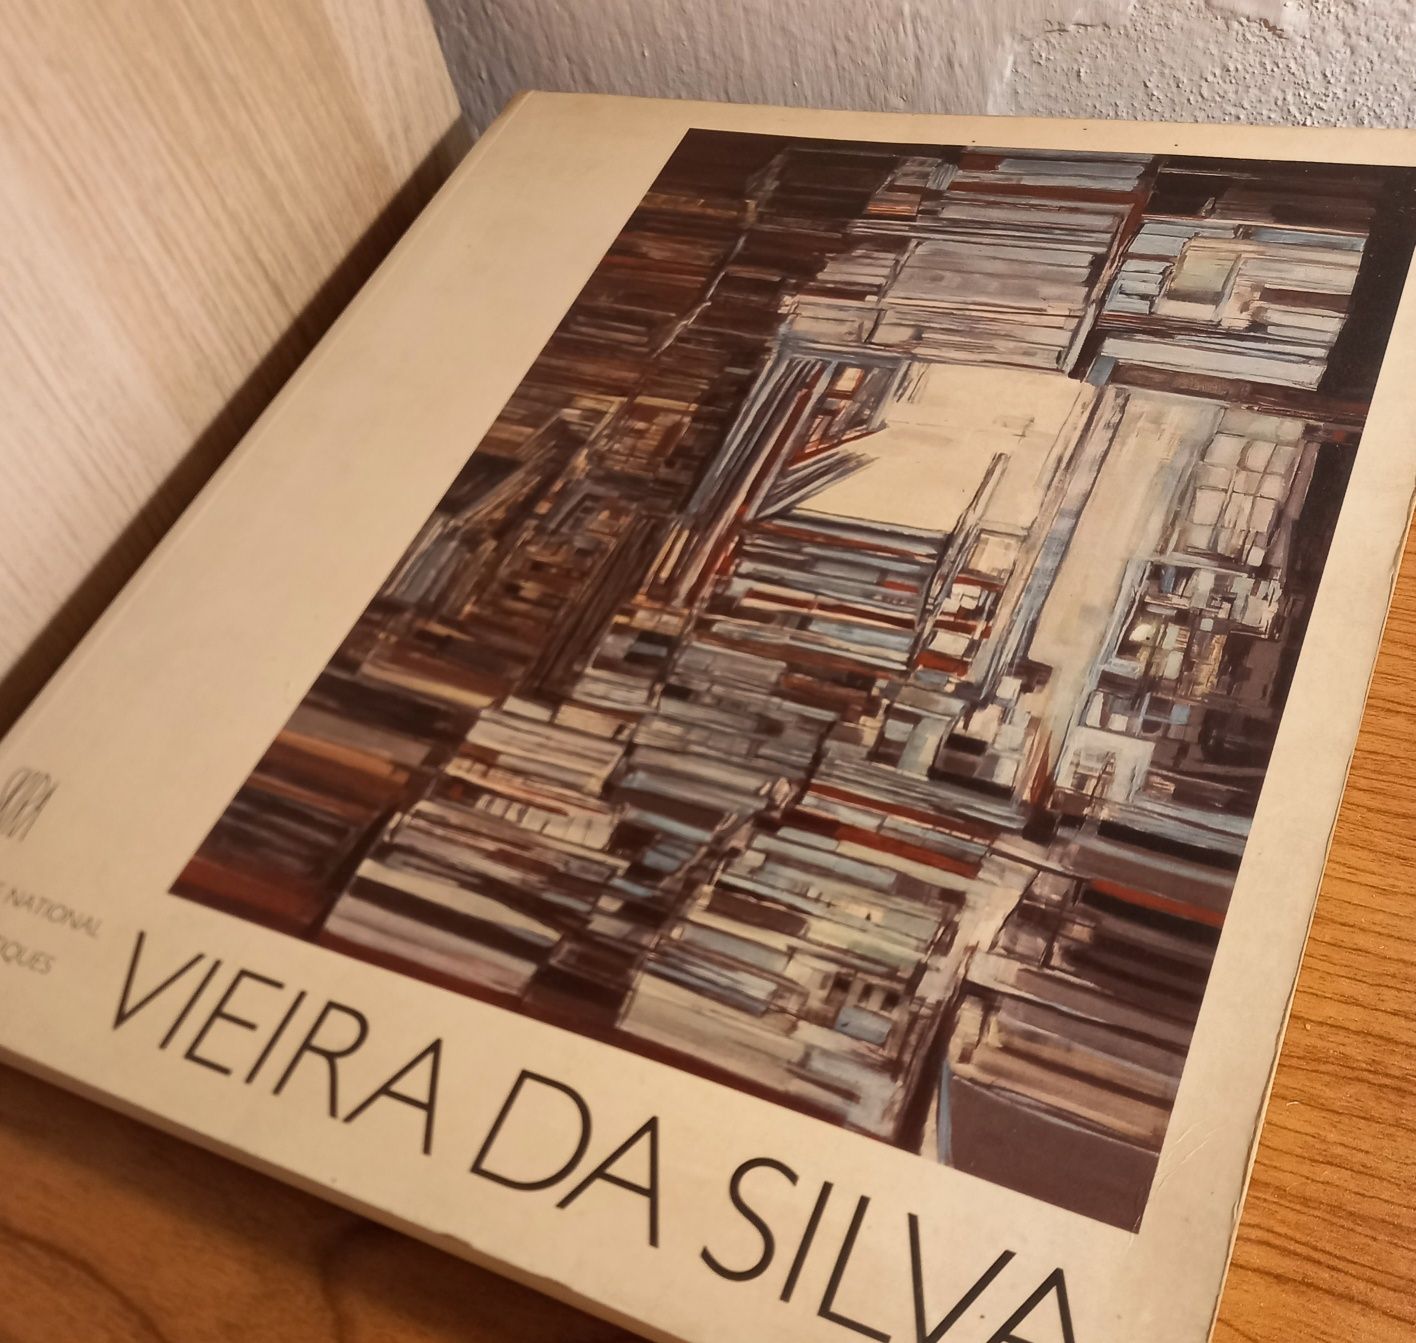 Livro catálogo sobre a pintora Vieira da Silva